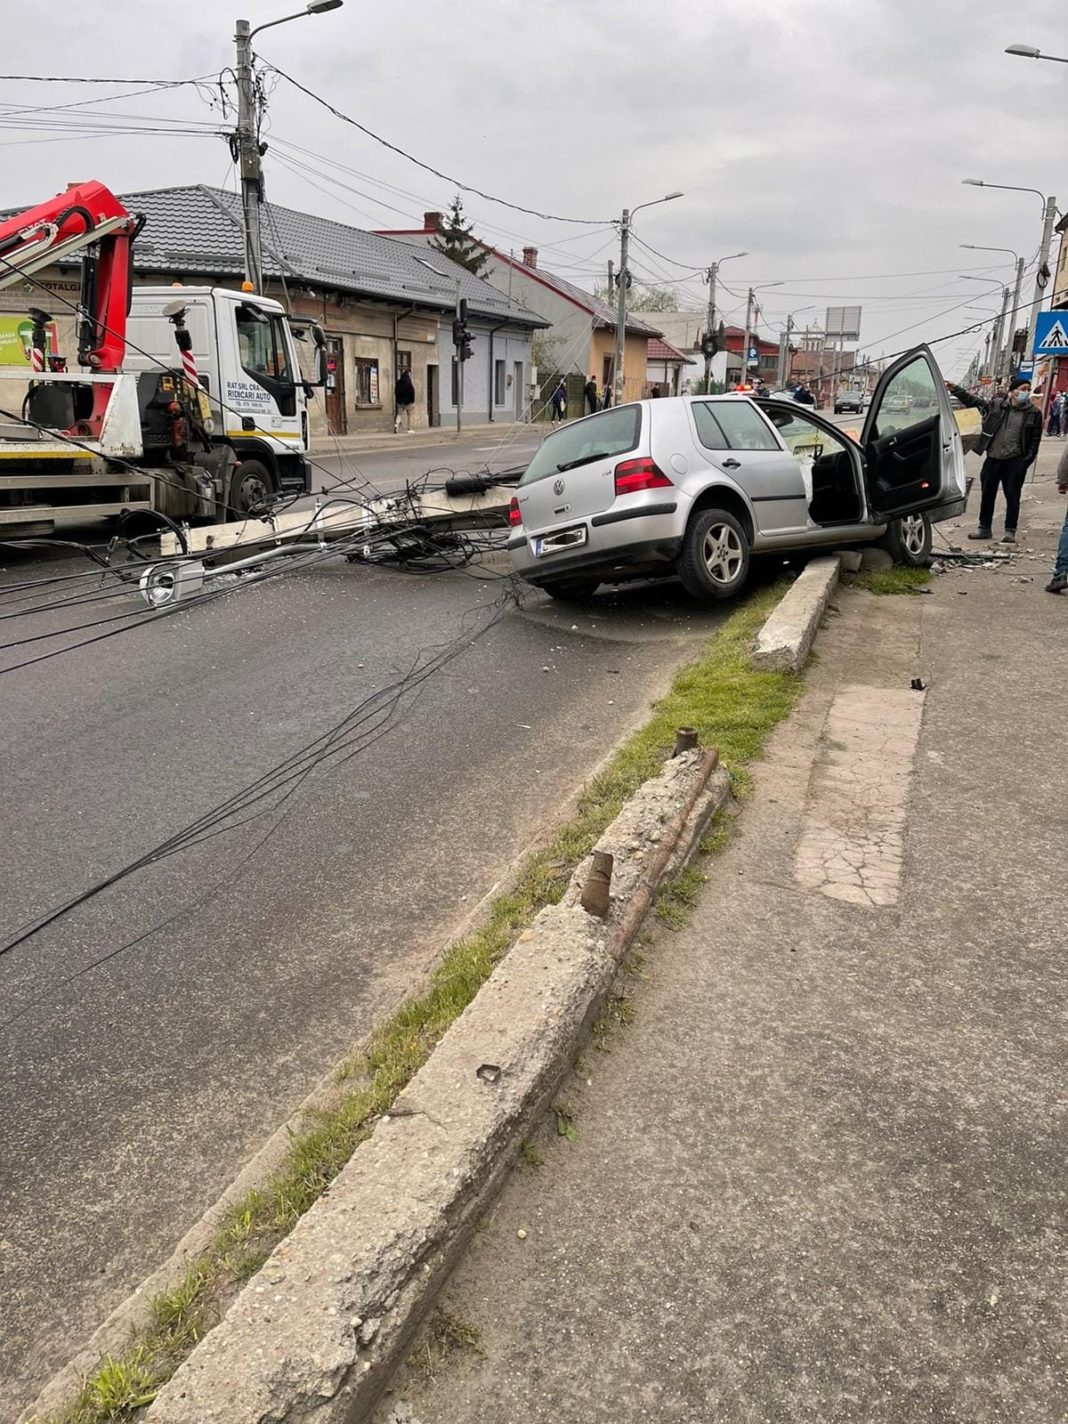 Un șofer băut a intrat cu mașina într-un stâlp, în Craiova